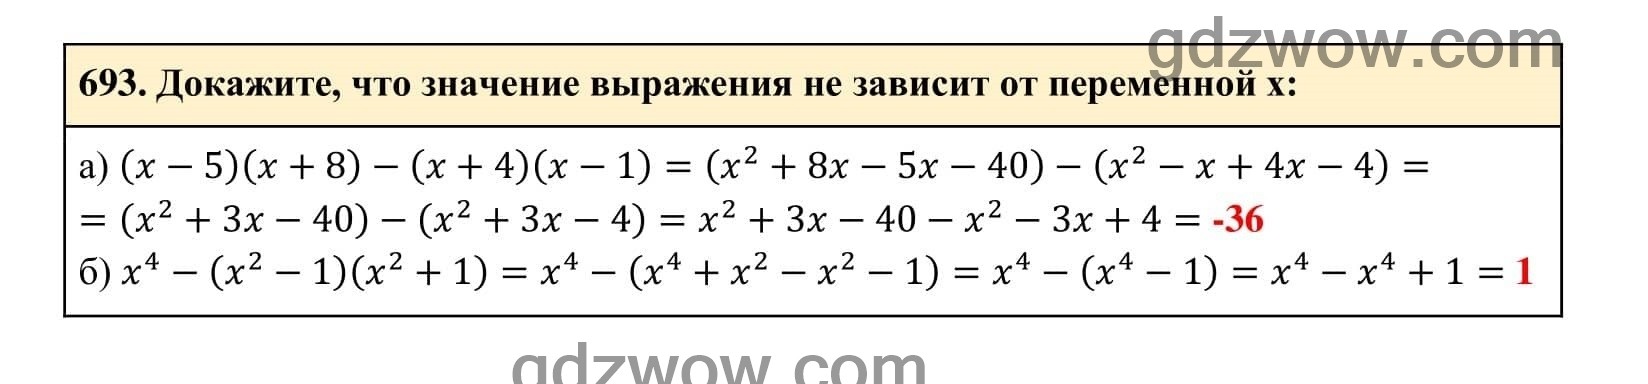 Упражнение 693 - ГДЗ по Алгебре 7 класс Учебник Макарычев (решебник) - GDZwow